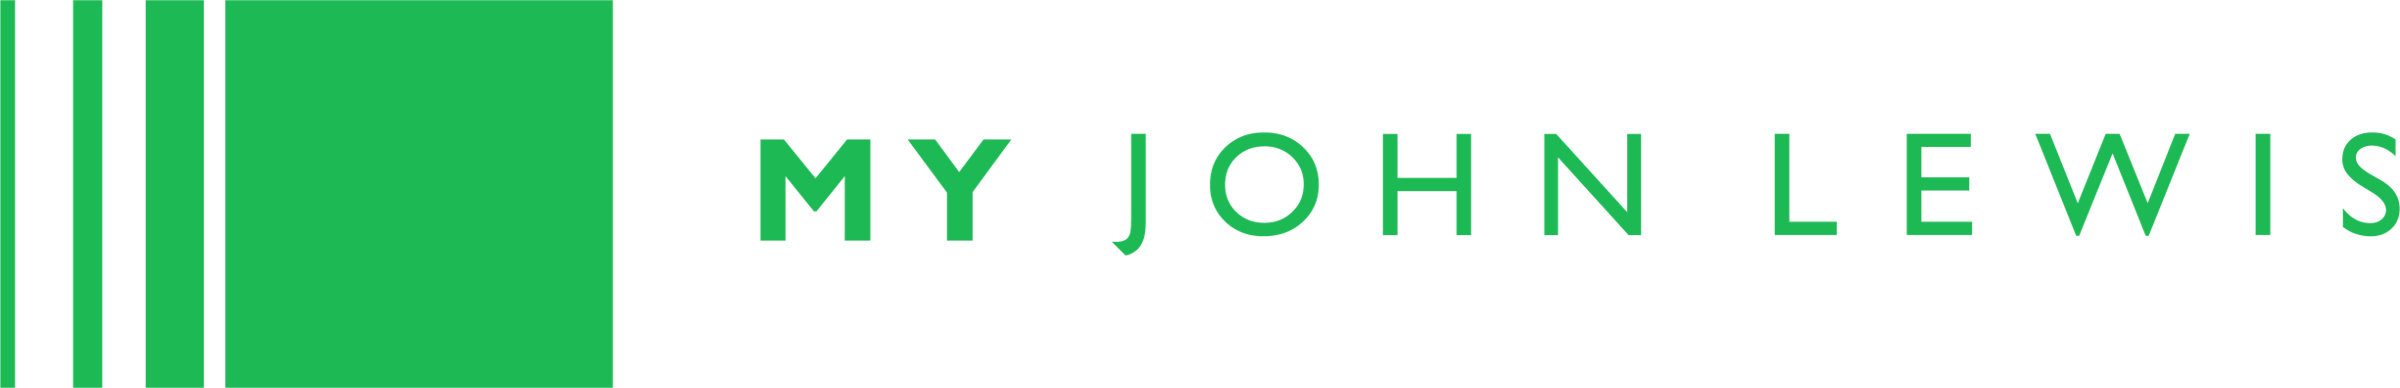 My John Lewis Logo